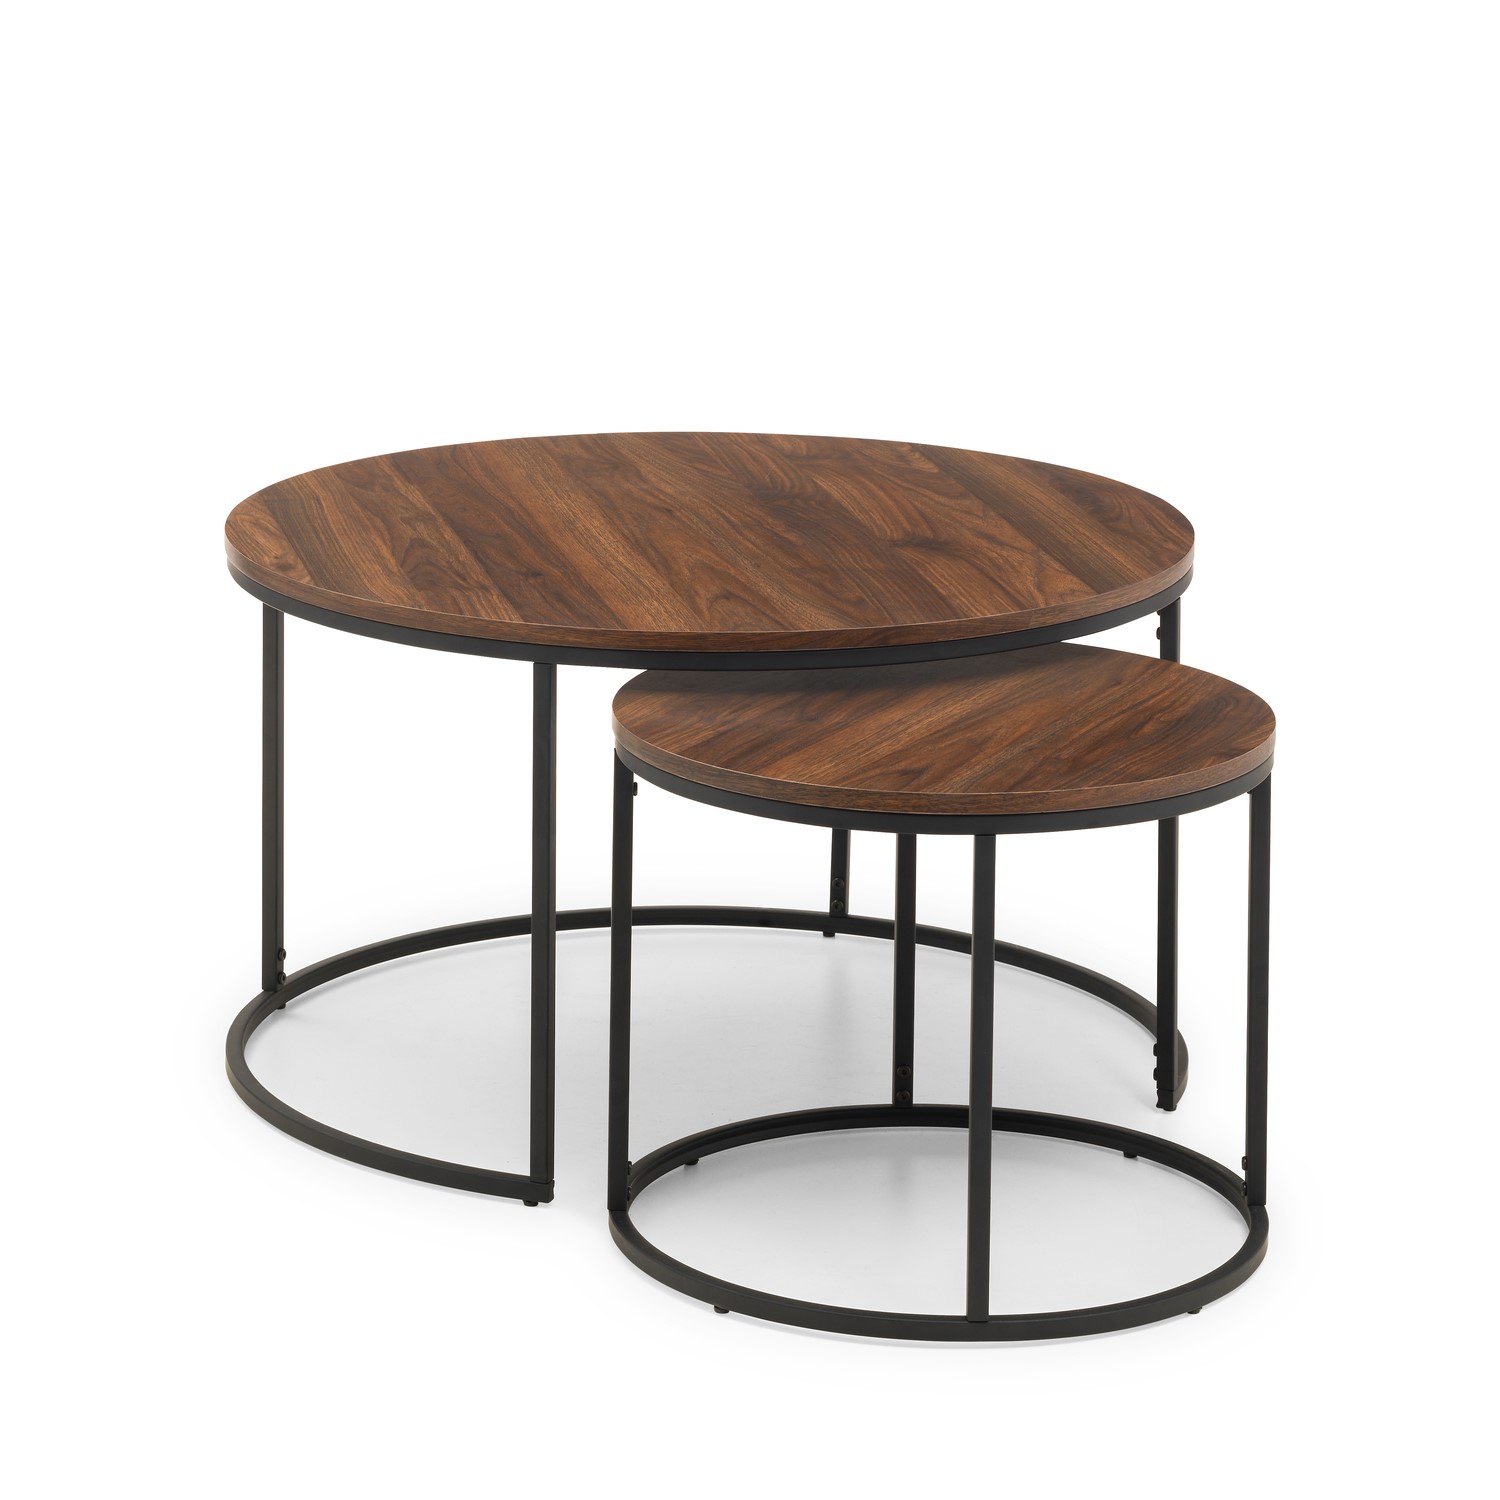 Round Dark Wood Nest Of Coffee Tables, Round Dark Wooden Coffee Table